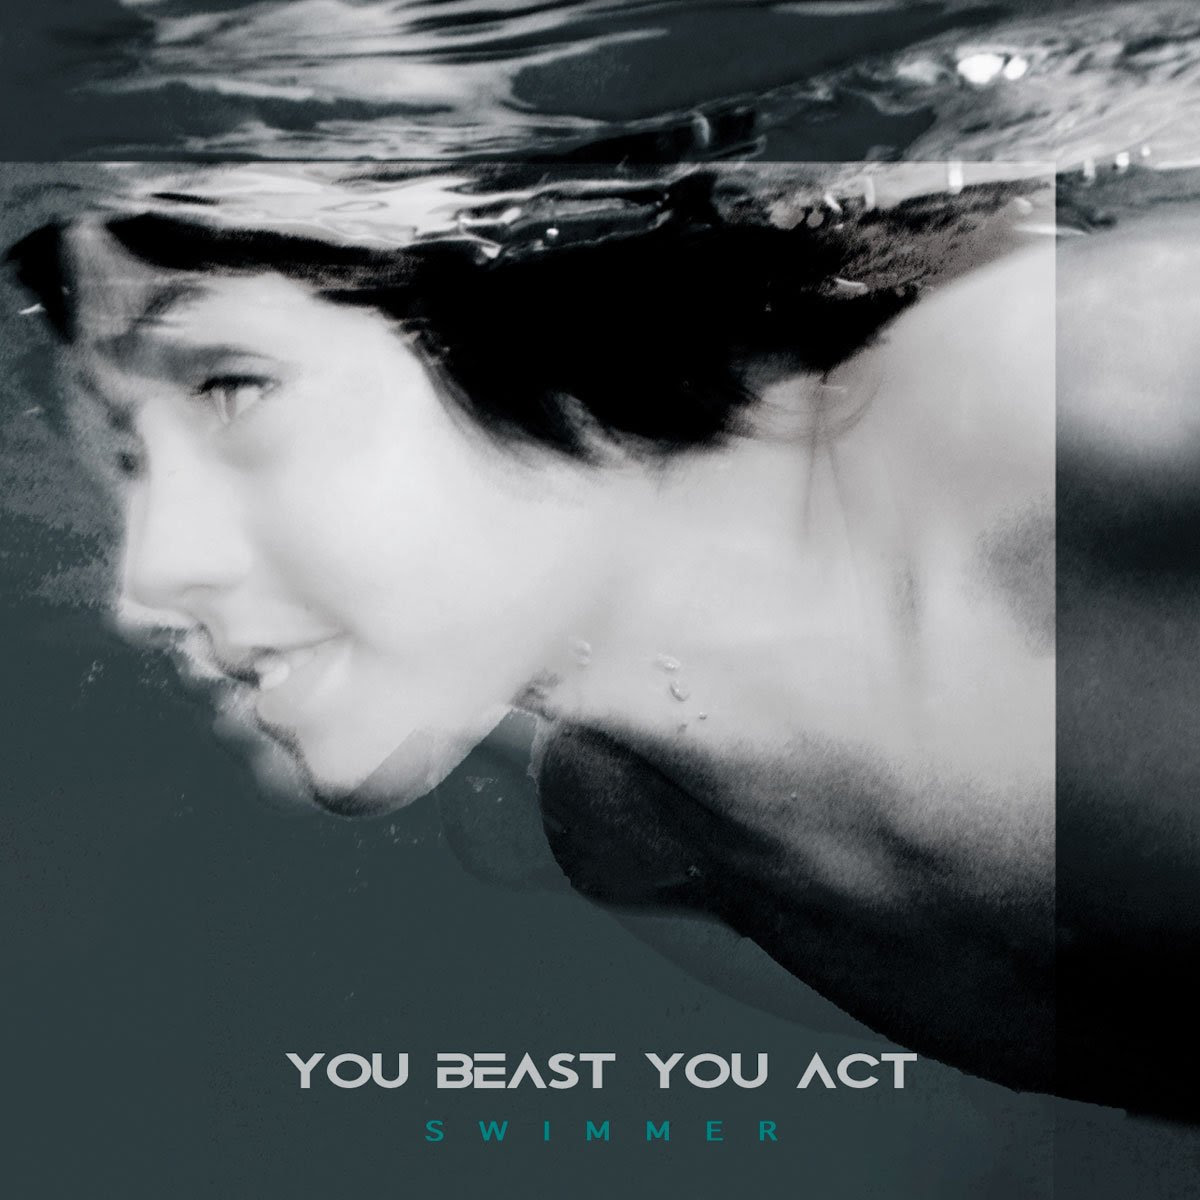 YOU BEAST YOU ACT: da venerdì 21 giugno disponibile in radio e in digitale “SWIMMER” il nuovo singolo